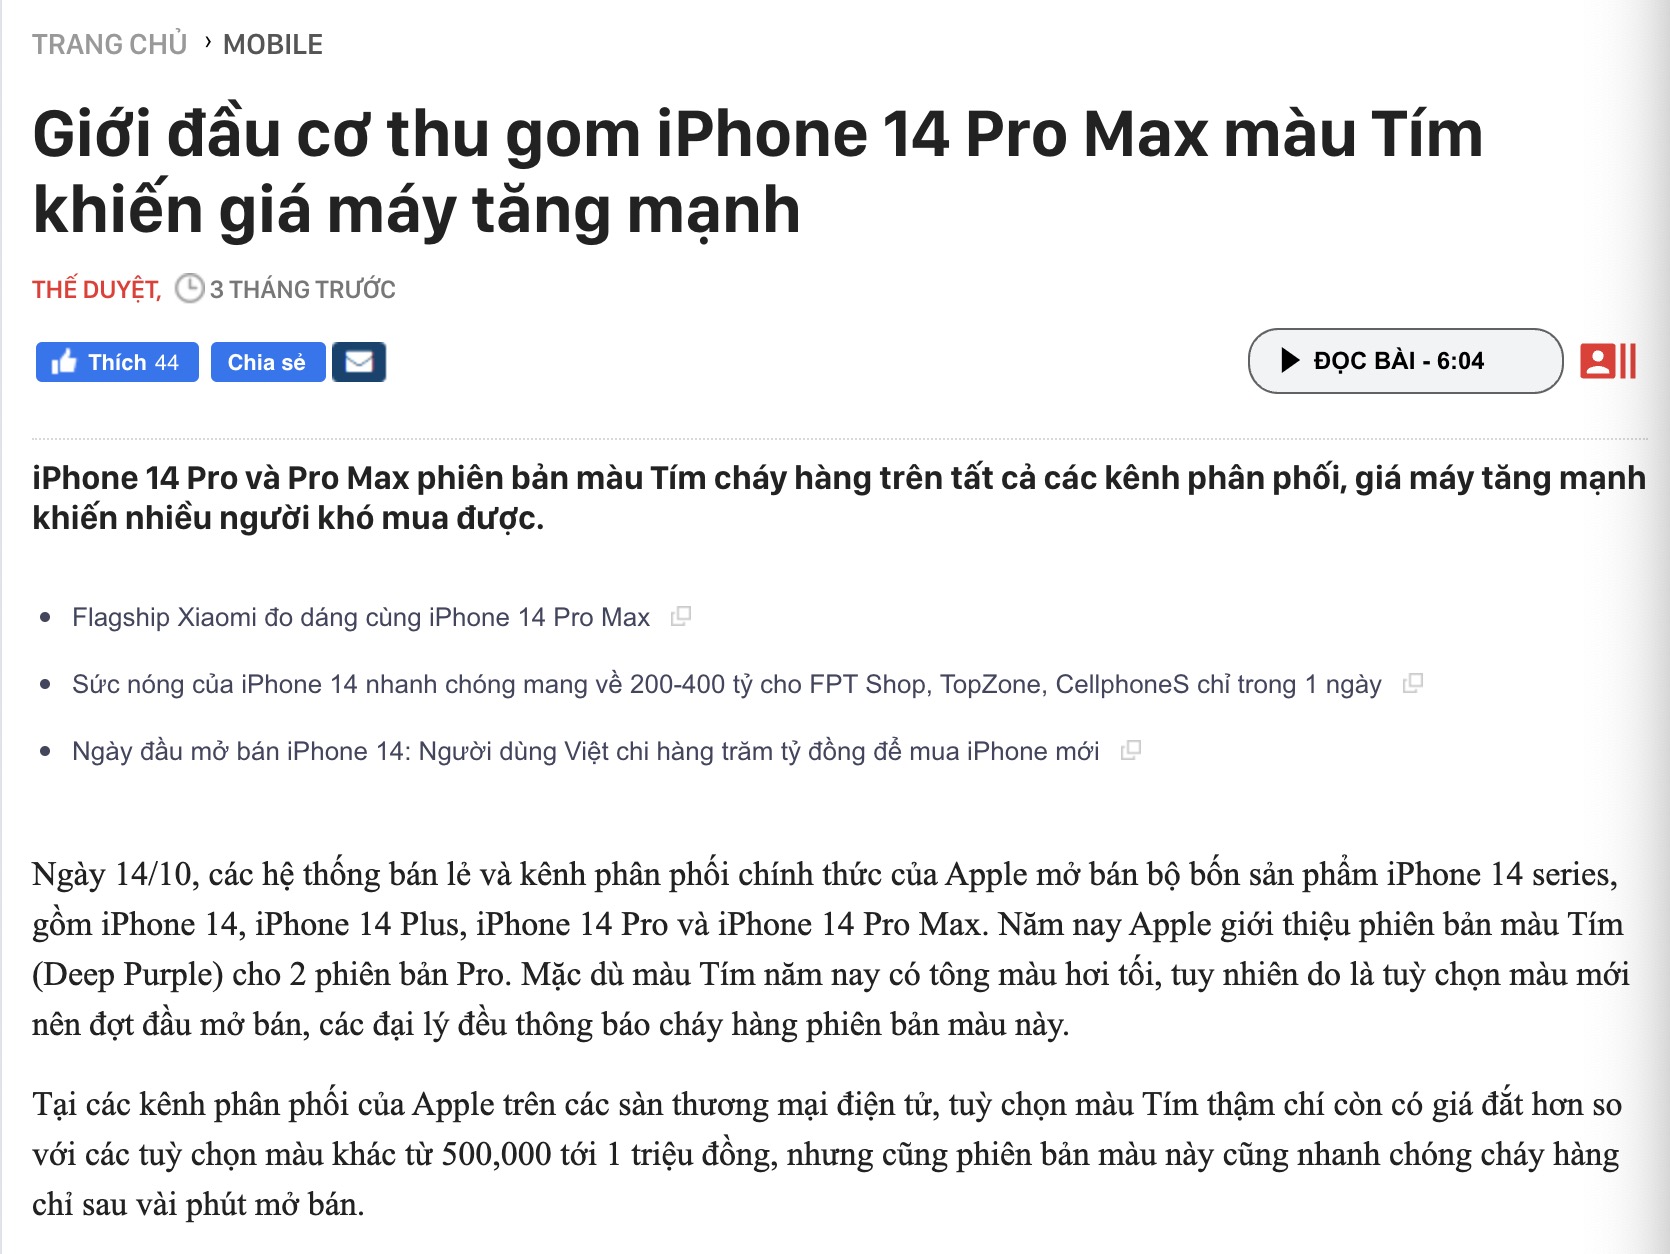 iPhone 14 Pro Max 